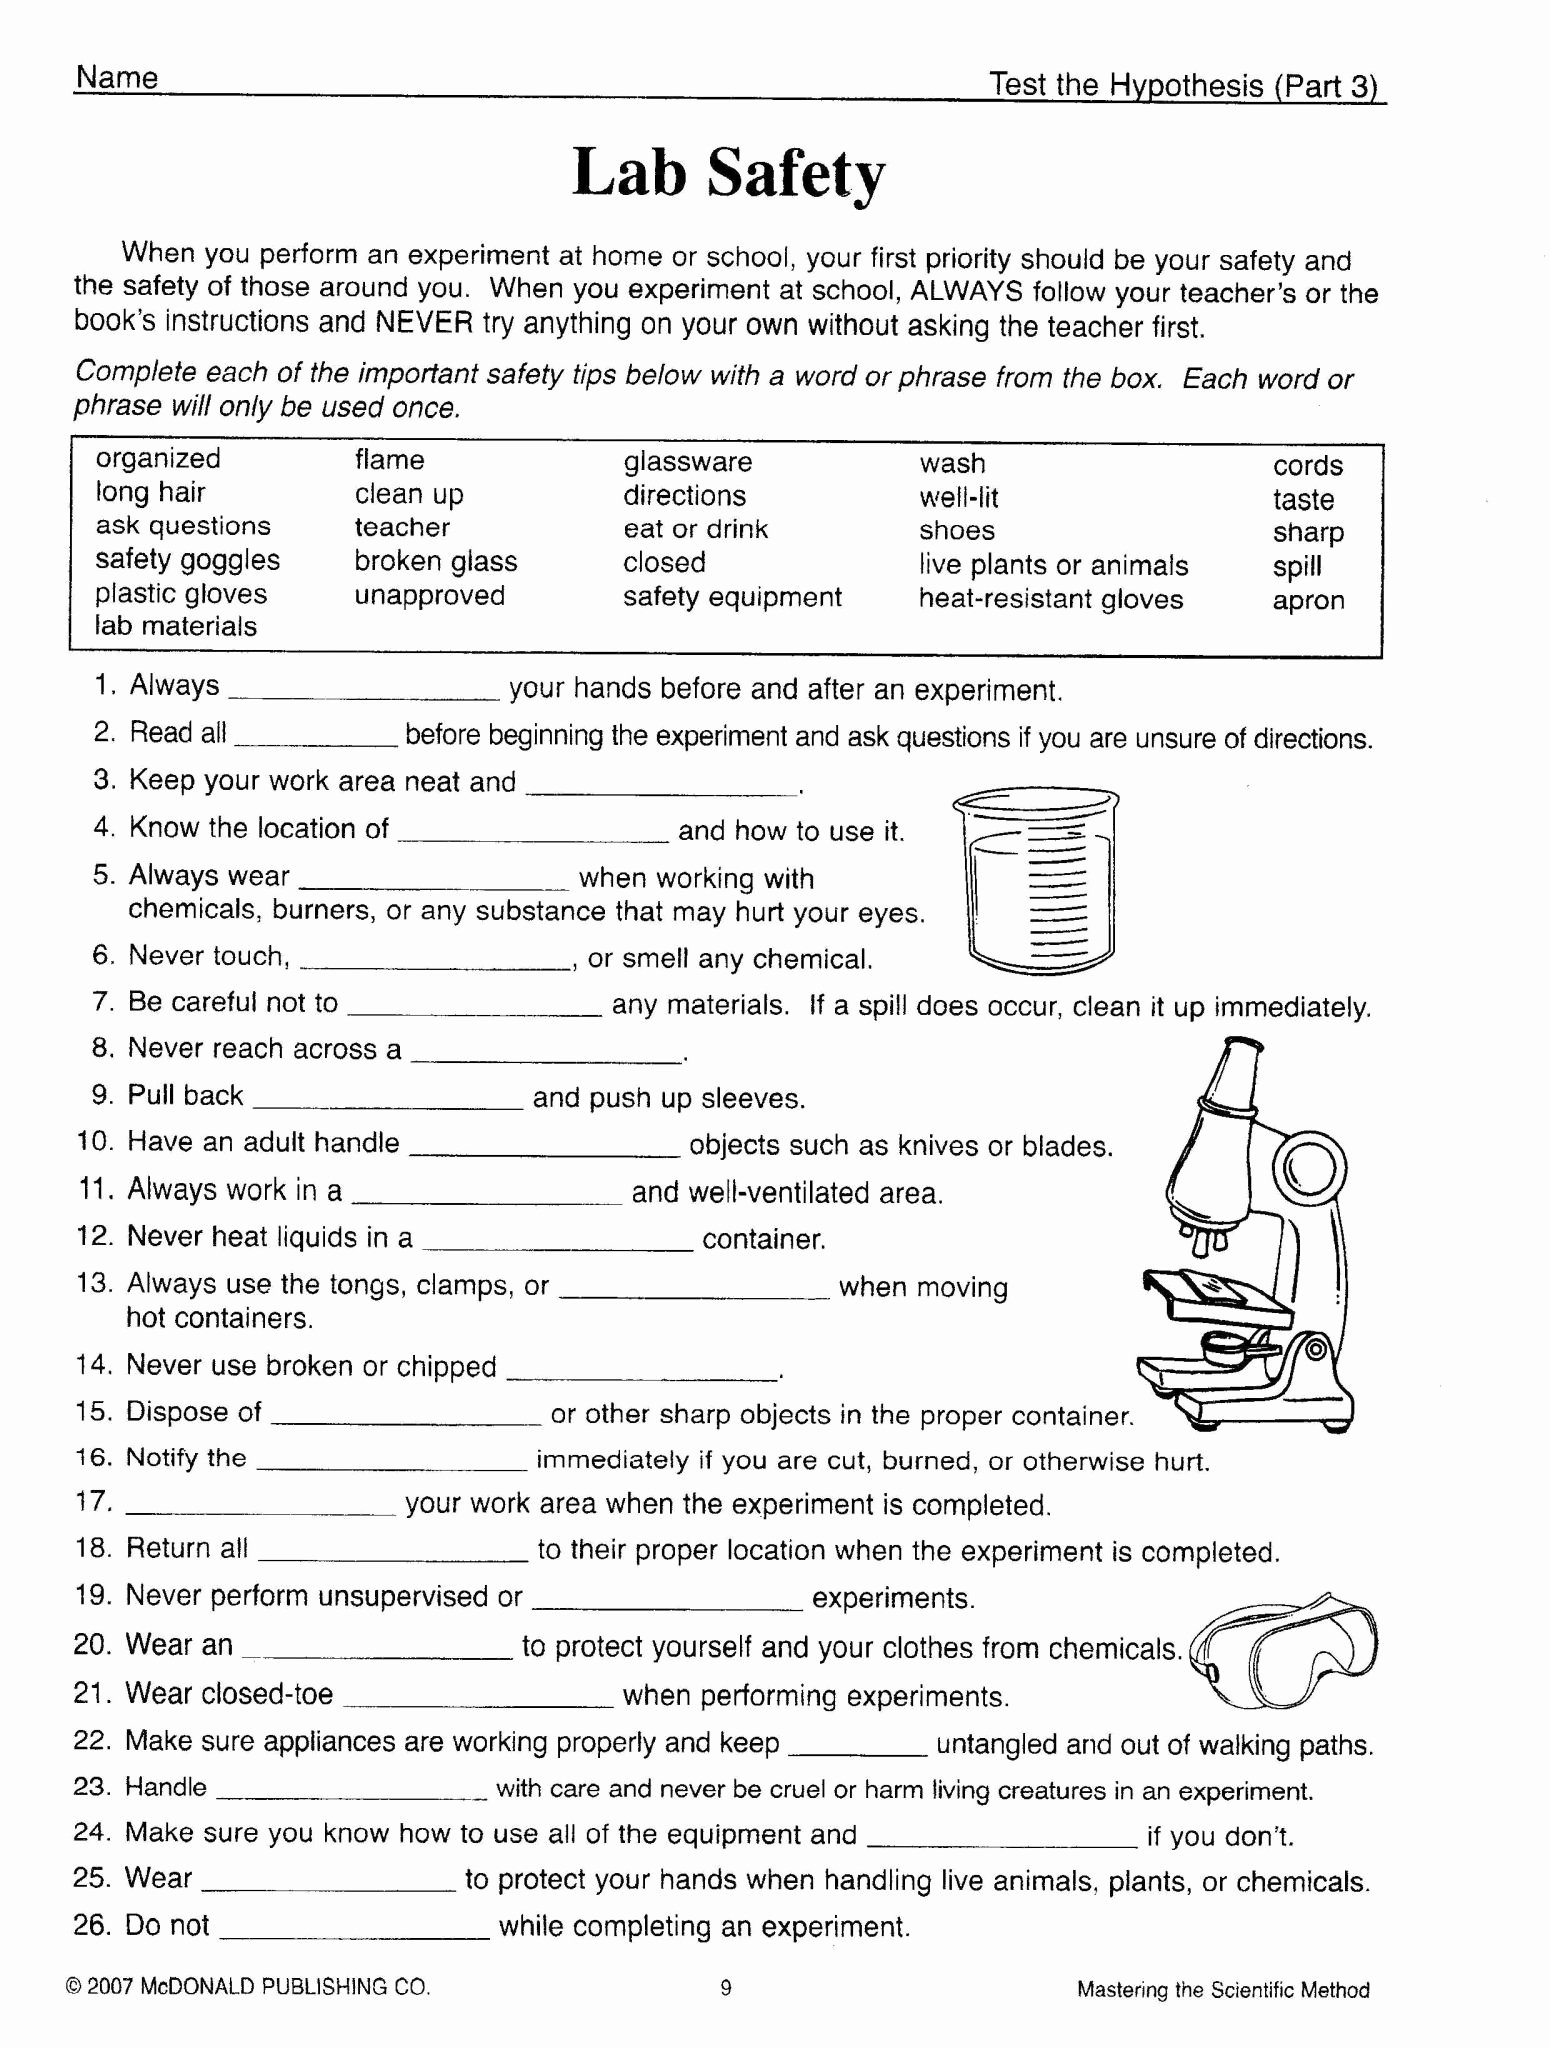 Scientific Method Worksheet Middle School Best Of Scientific Method Worksheet High School